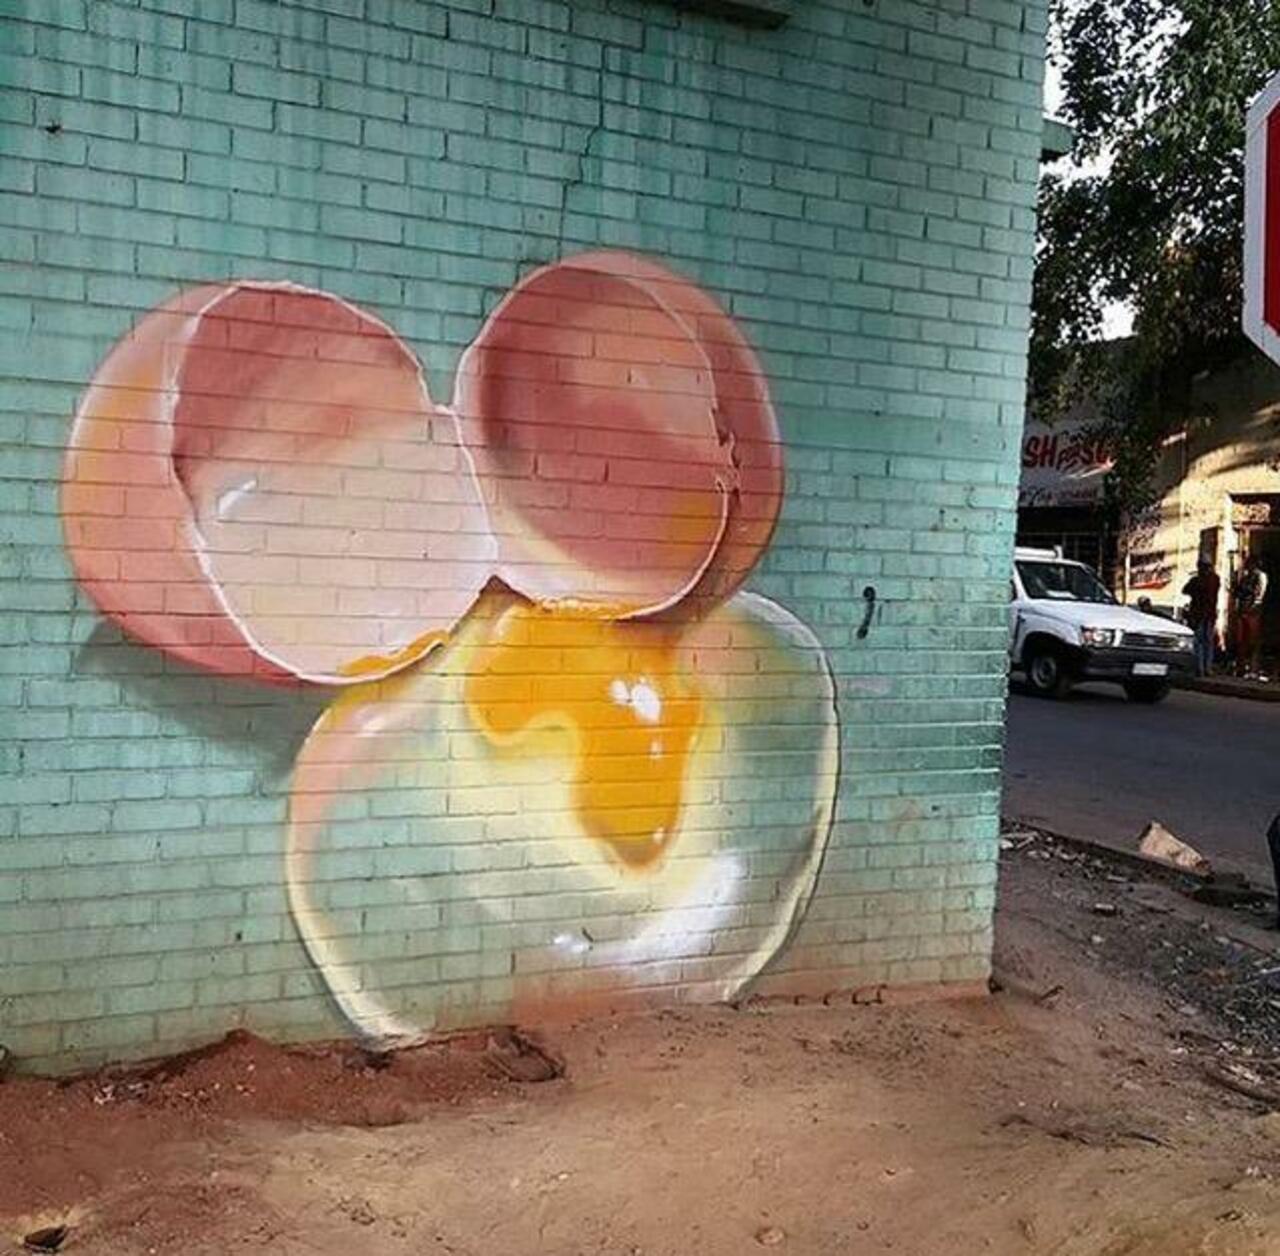 Street Art by falco1 in Johannesburg SA  

#art #graffiti #mural #streetart http://t.co/kz00LGNvdE